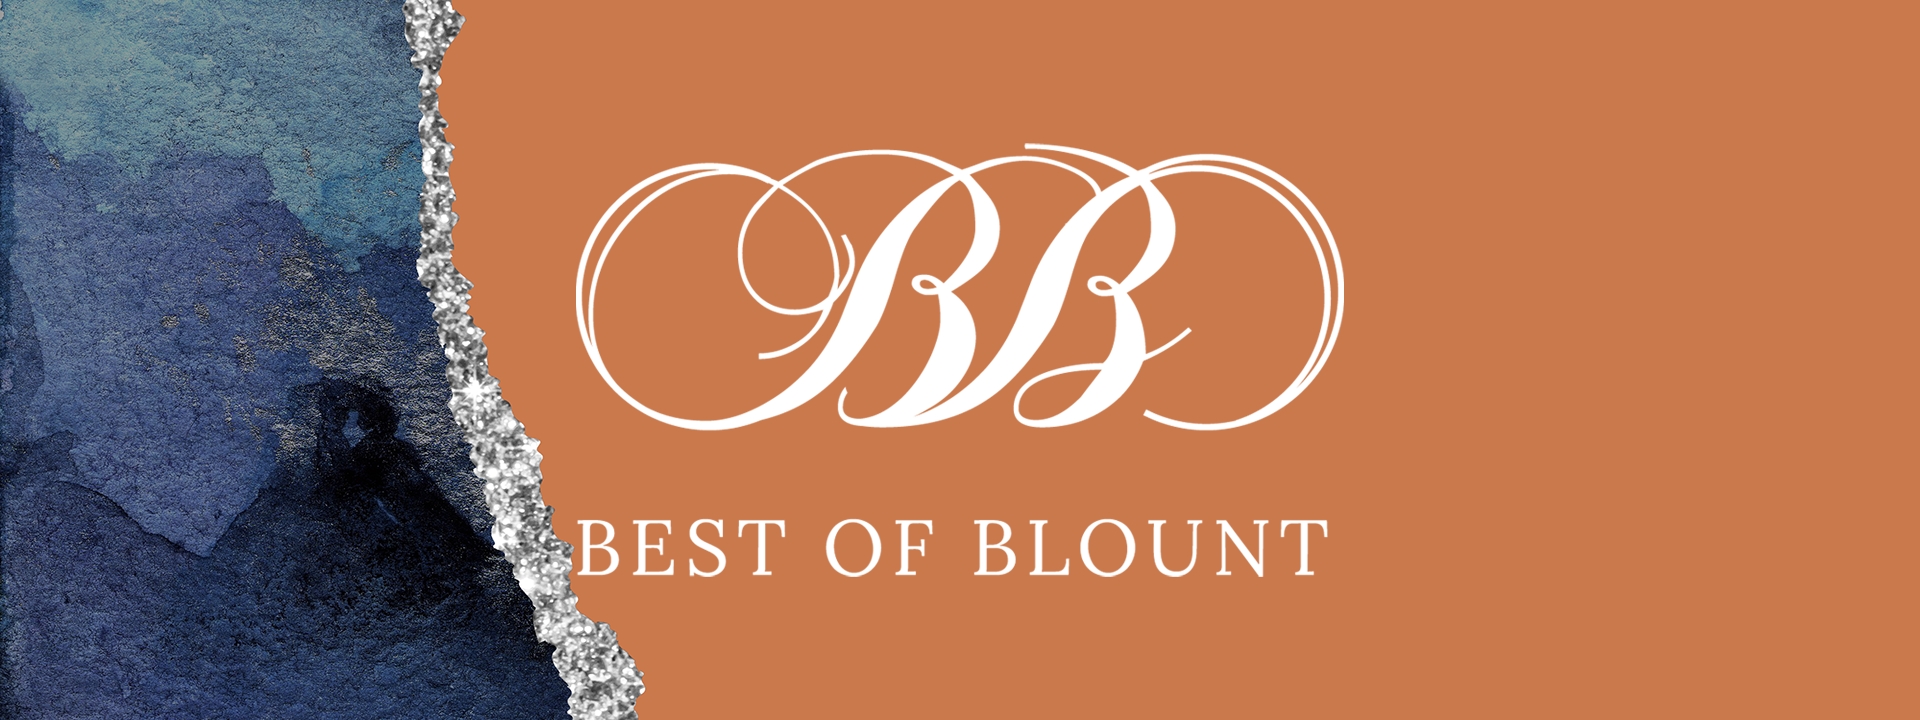 Best of Blount